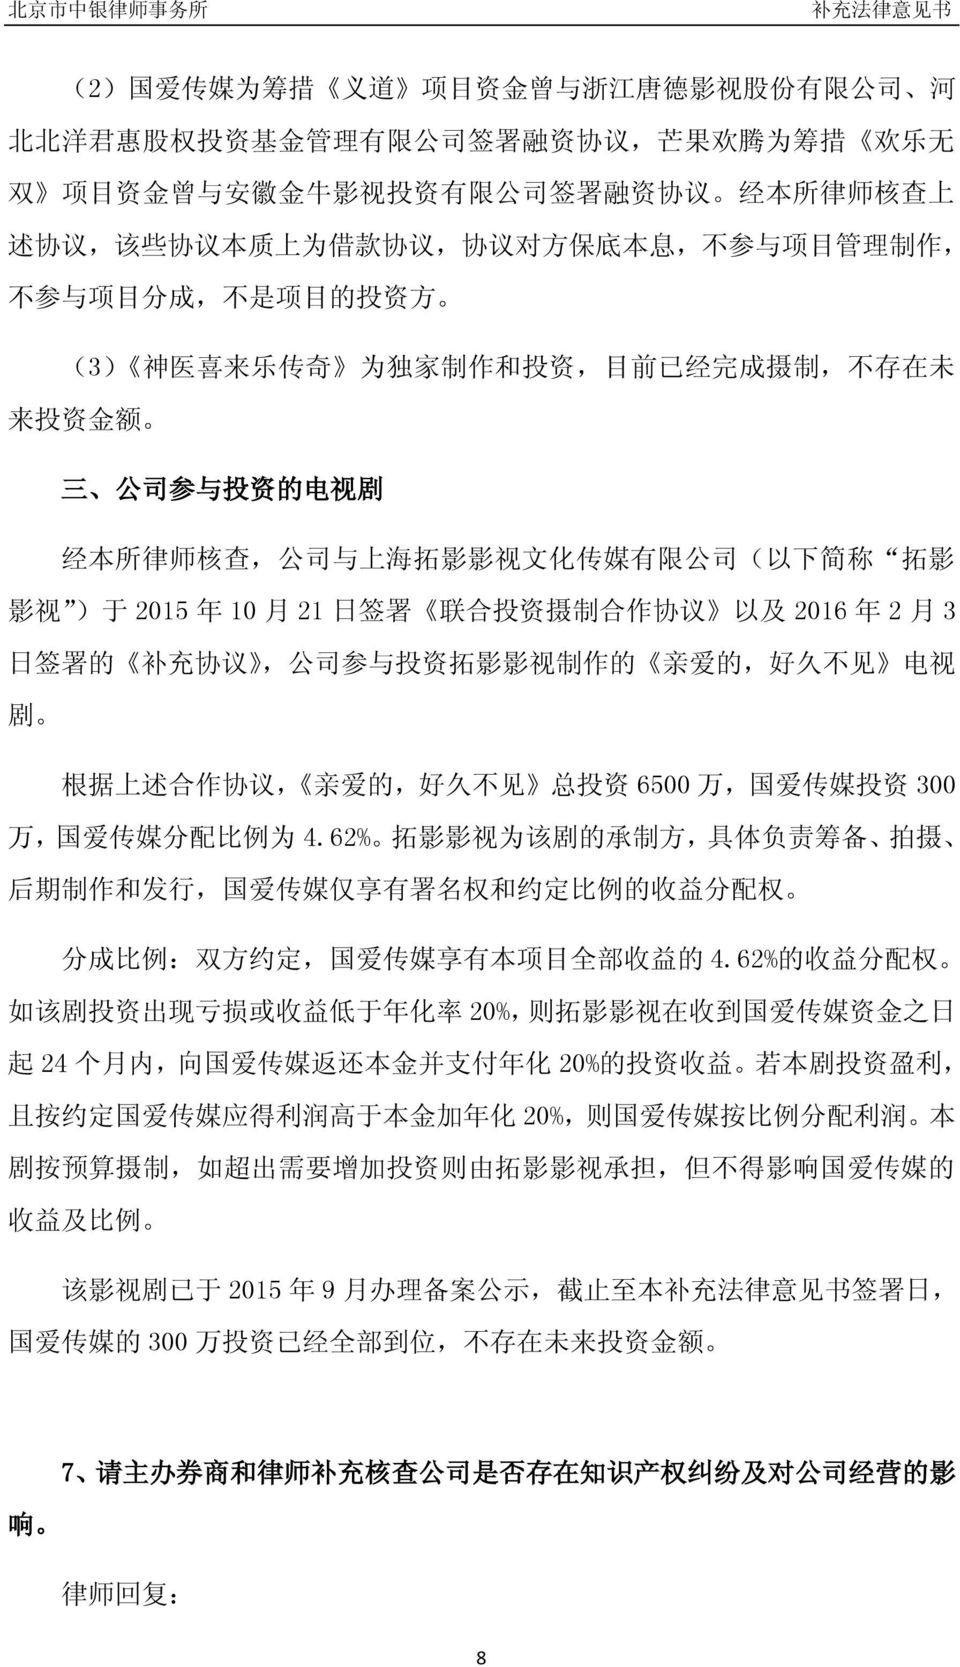 公 司 与 上 海 拓 影 影 视 文 化 传 媒 有 限 公 司 ( 以 下 简 称 拓 影 影 视 ) 于 2015 年 10 月 21 日 签 署 联 合 投 资 摄 制 合 作 协 议 以 及 2016 年 2 月 3 日 签 署 的 补 充 协 议, 公 司 参 与 投 资 拓 影 影 视 制 作 的 亲 爱 的, 好 久 不 见 电 视 剧 根 据 上 述 合 作 协 议, 亲 爱